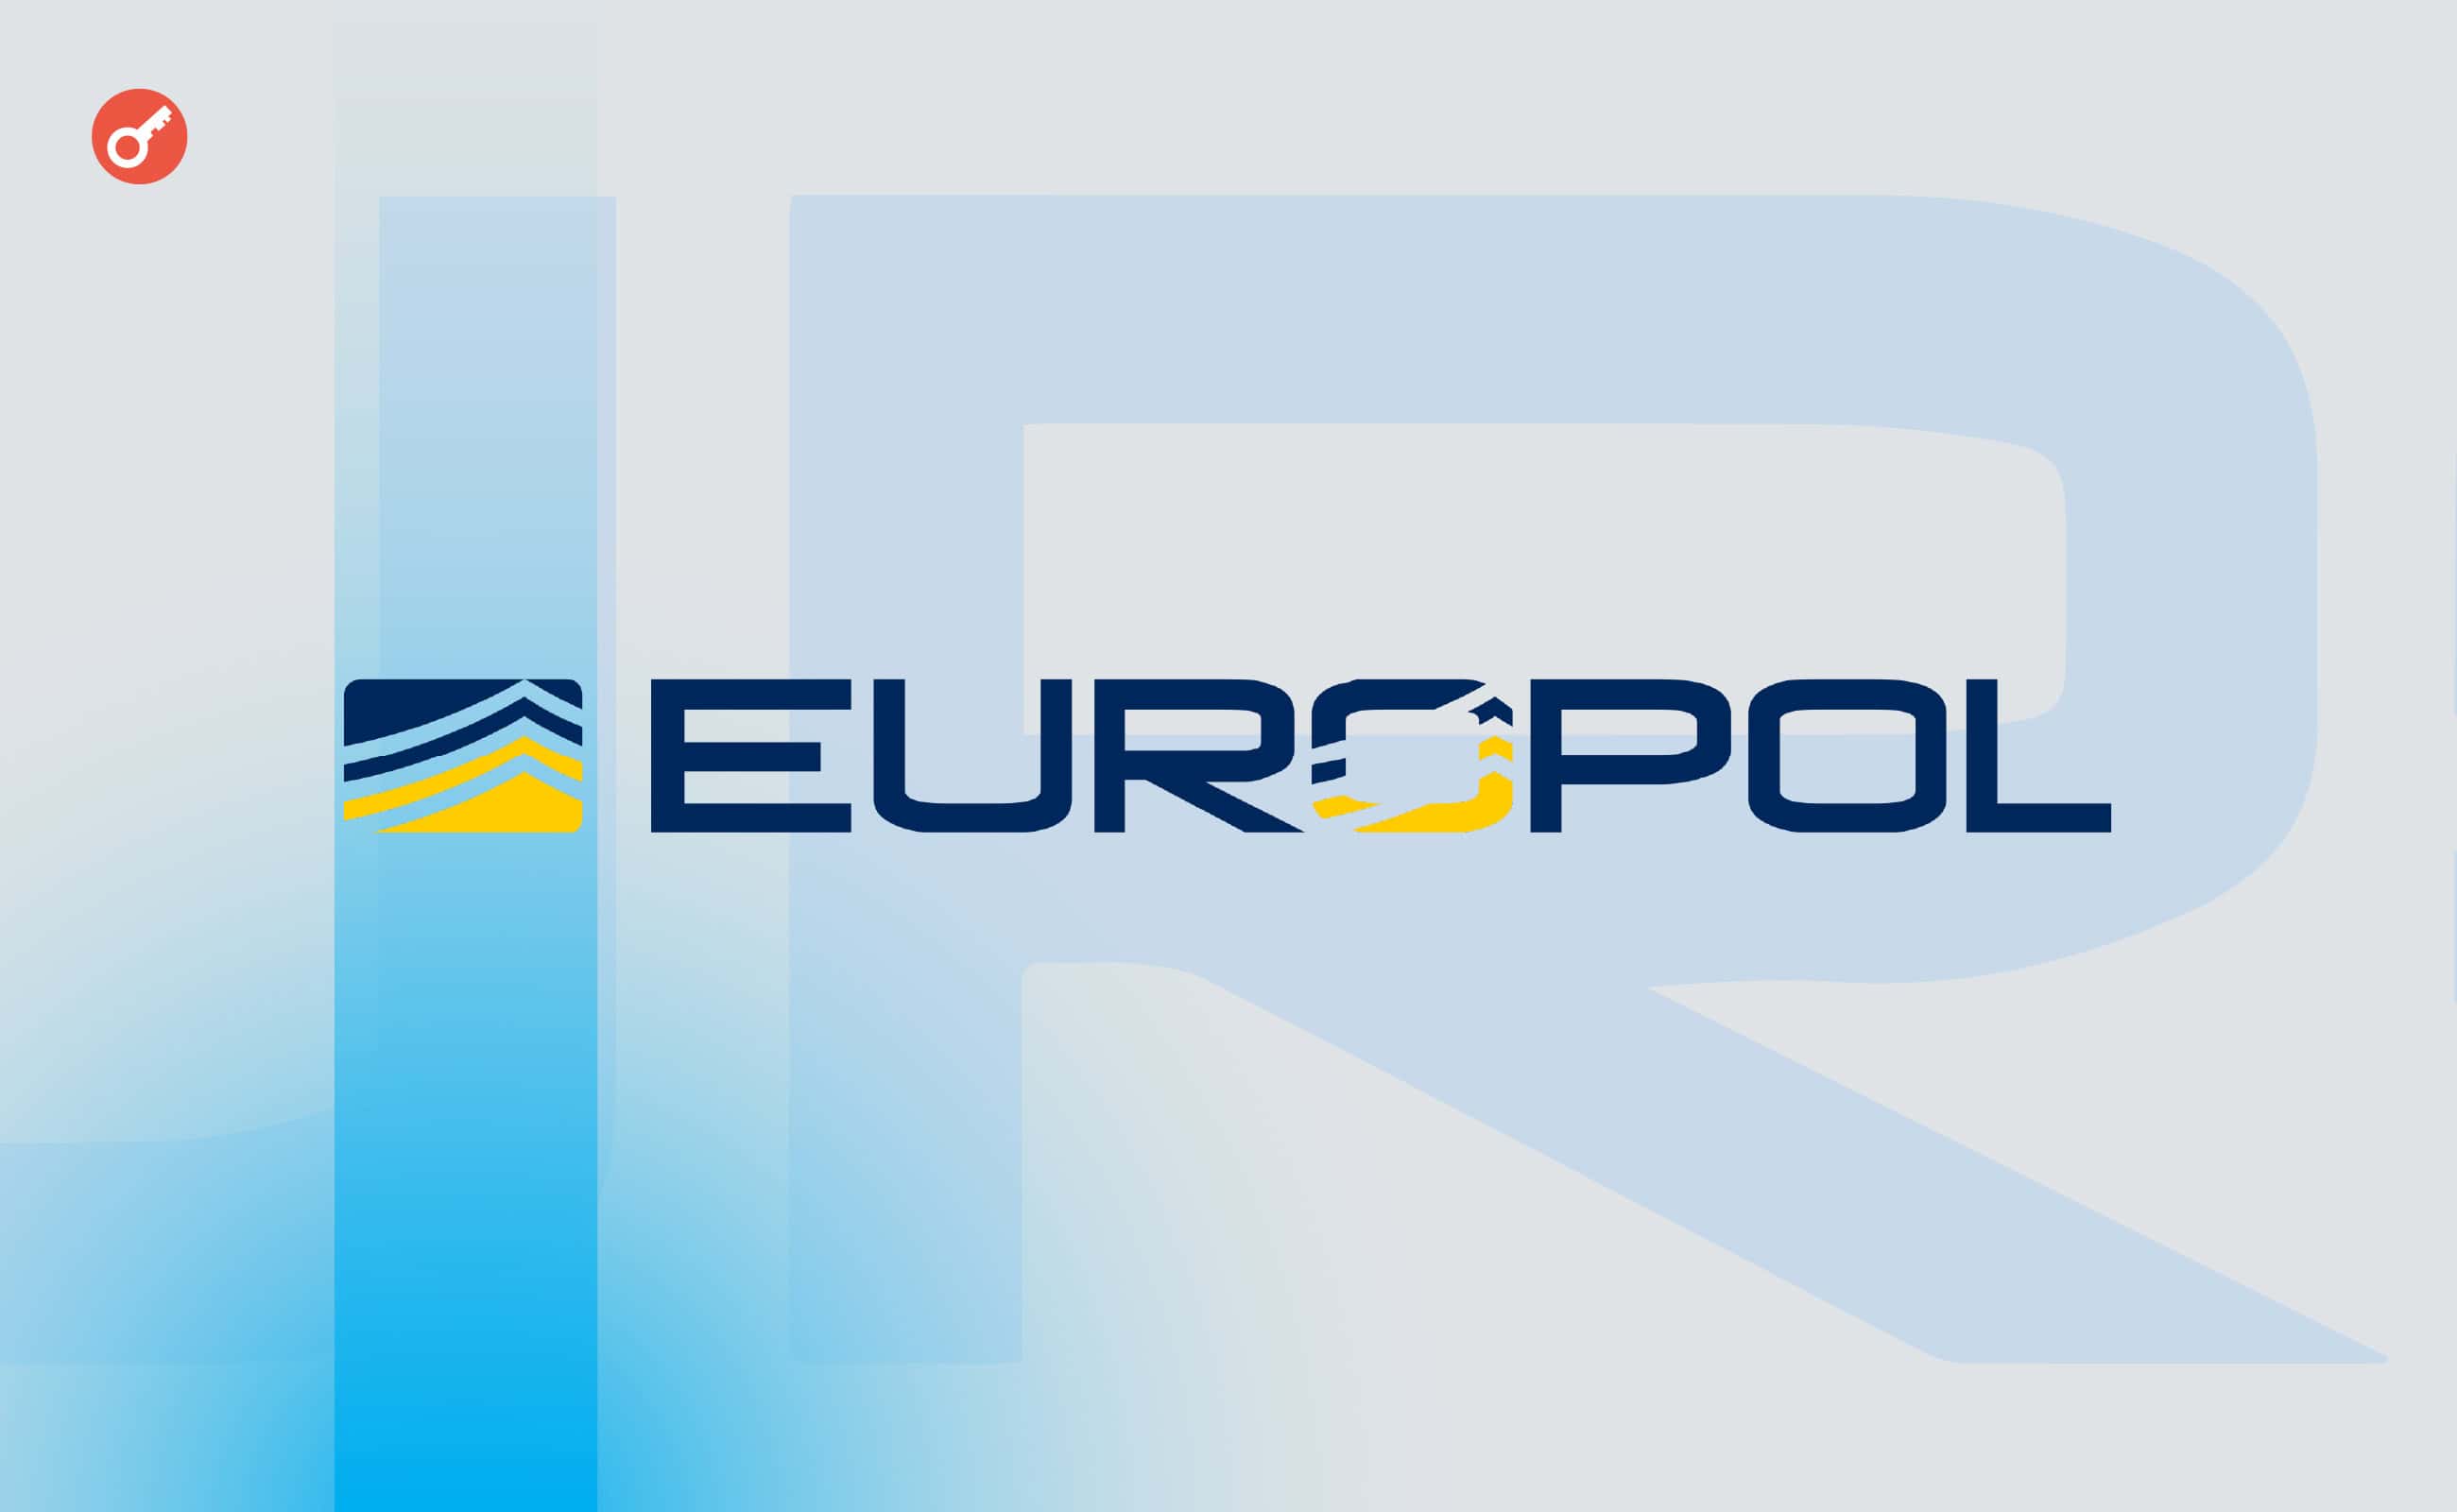 Європол провів найбільшу в історії операцію проти ботнетів з арештами в Україні. Головний колаж новини.